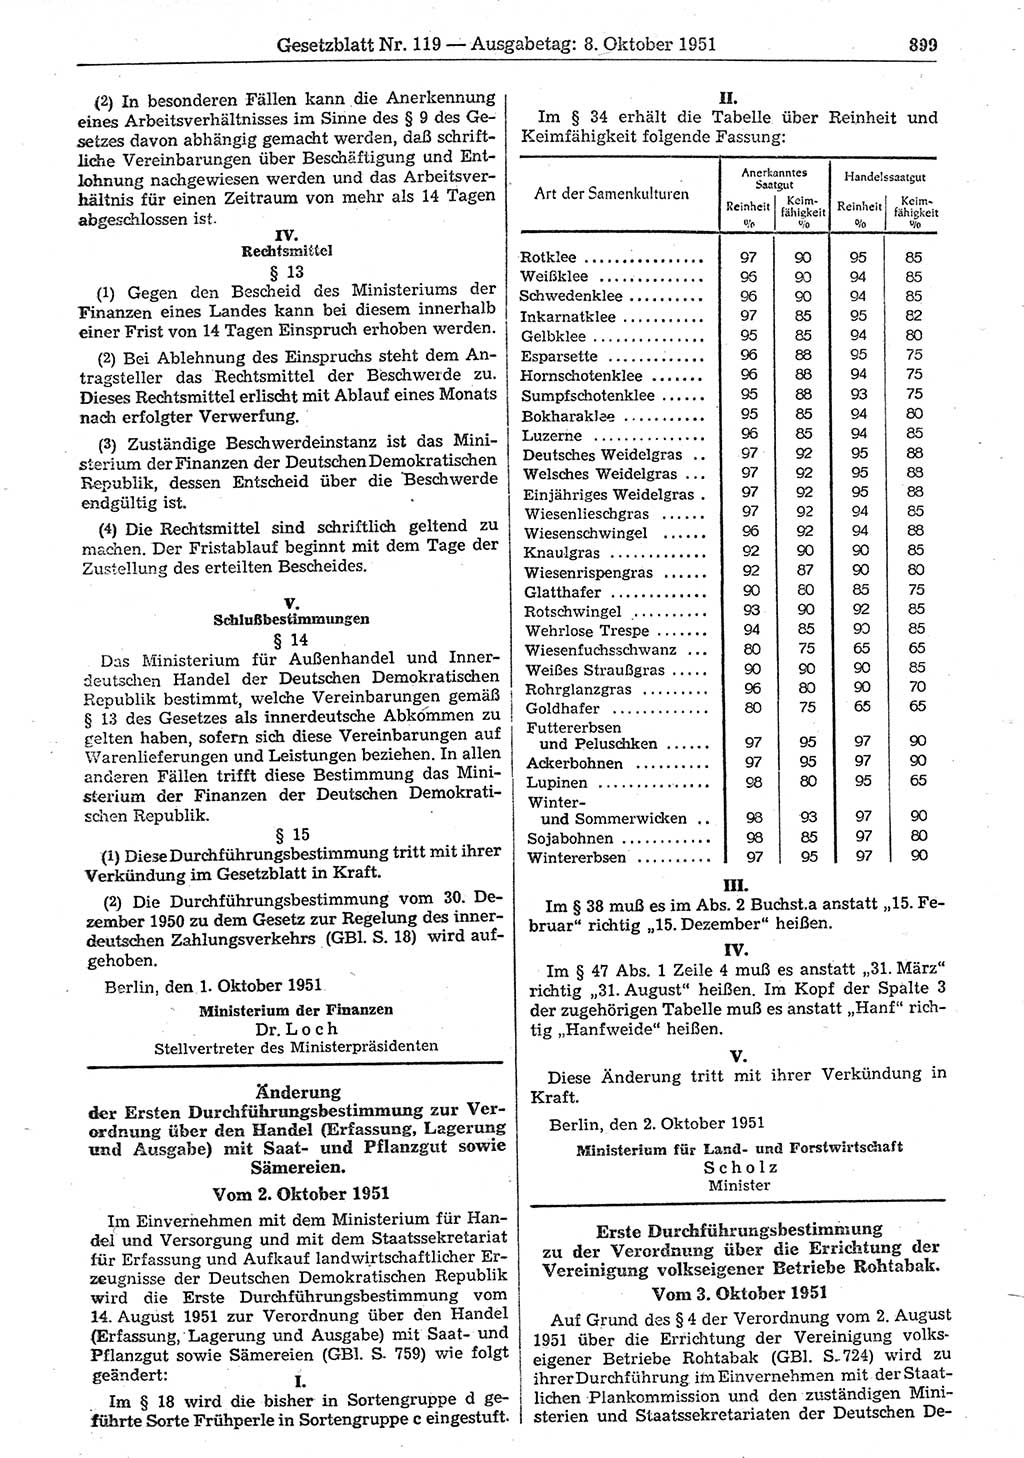 Gesetzblatt (GBl.) der Deutschen Demokratischen Republik (DDR) 1951, Seite 899 (GBl. DDR 1951, S. 899)